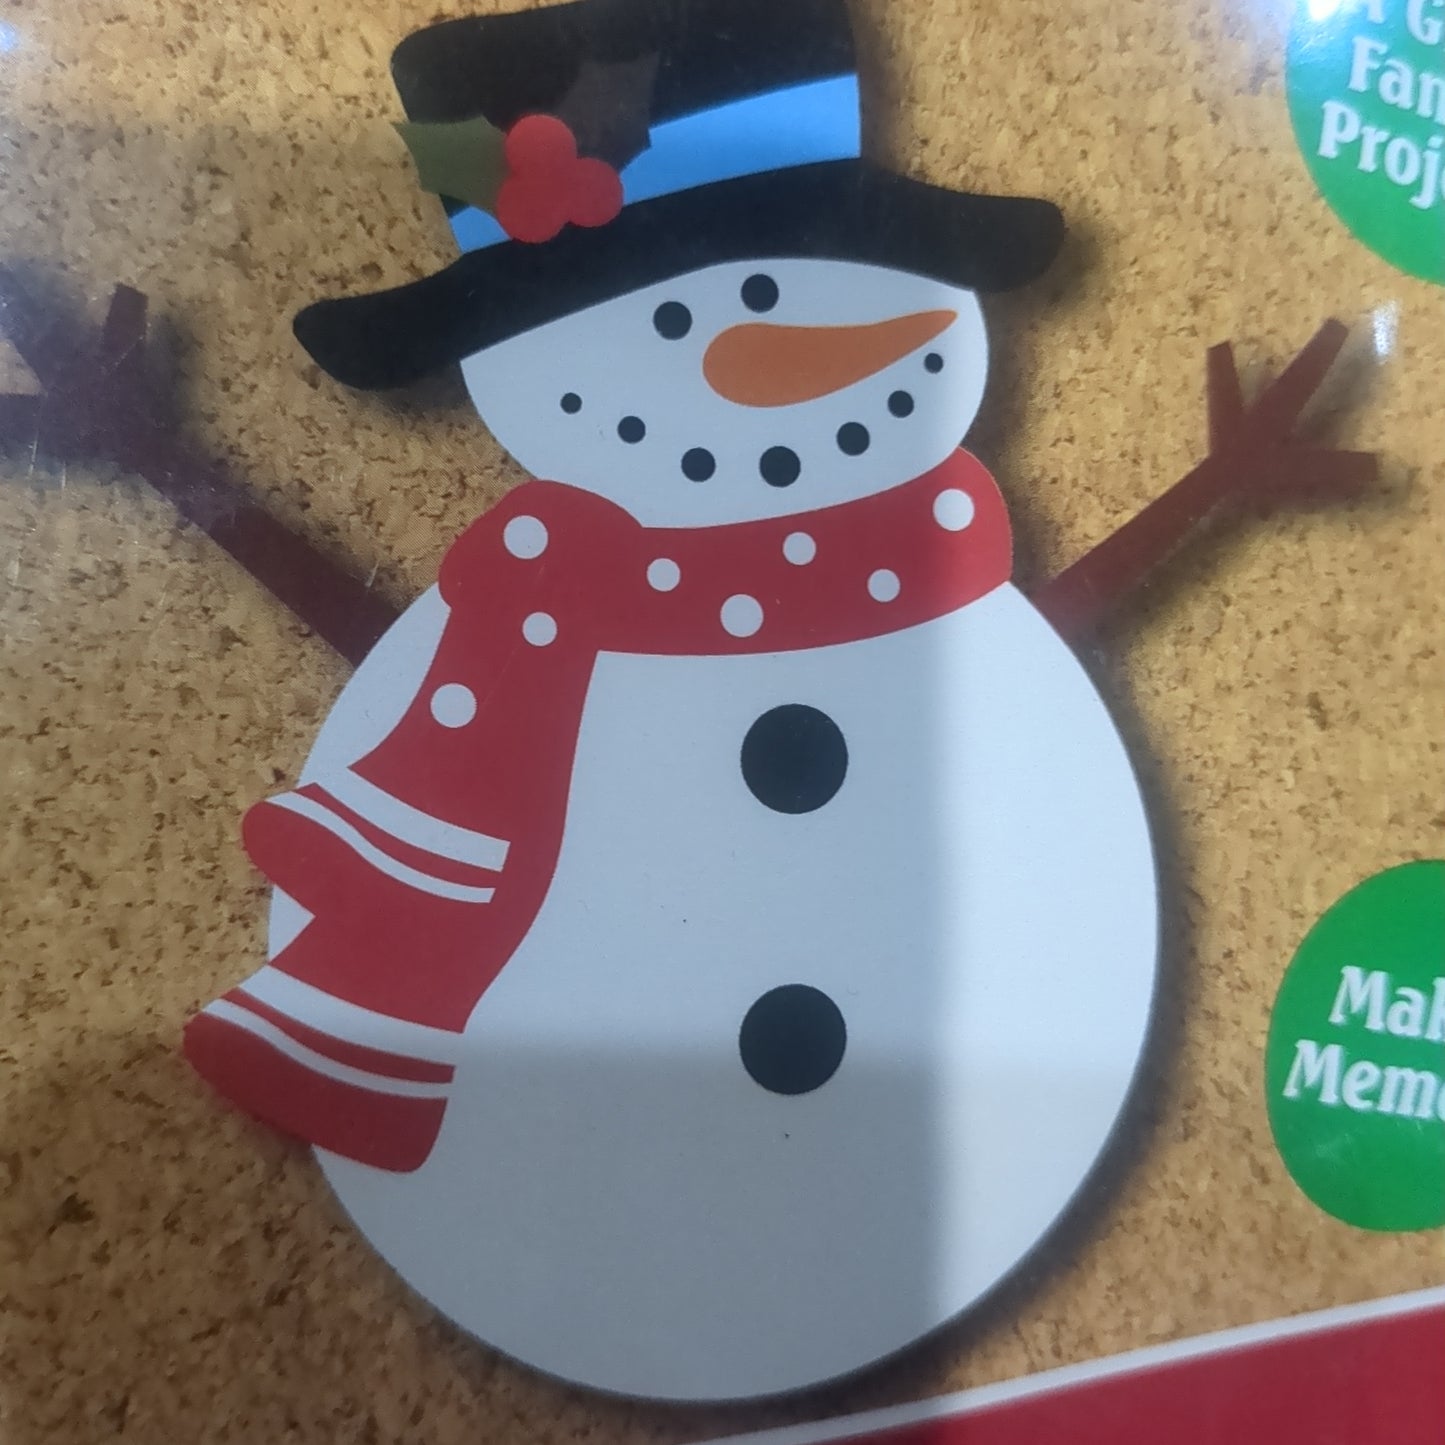 Foam snowman ornament kit